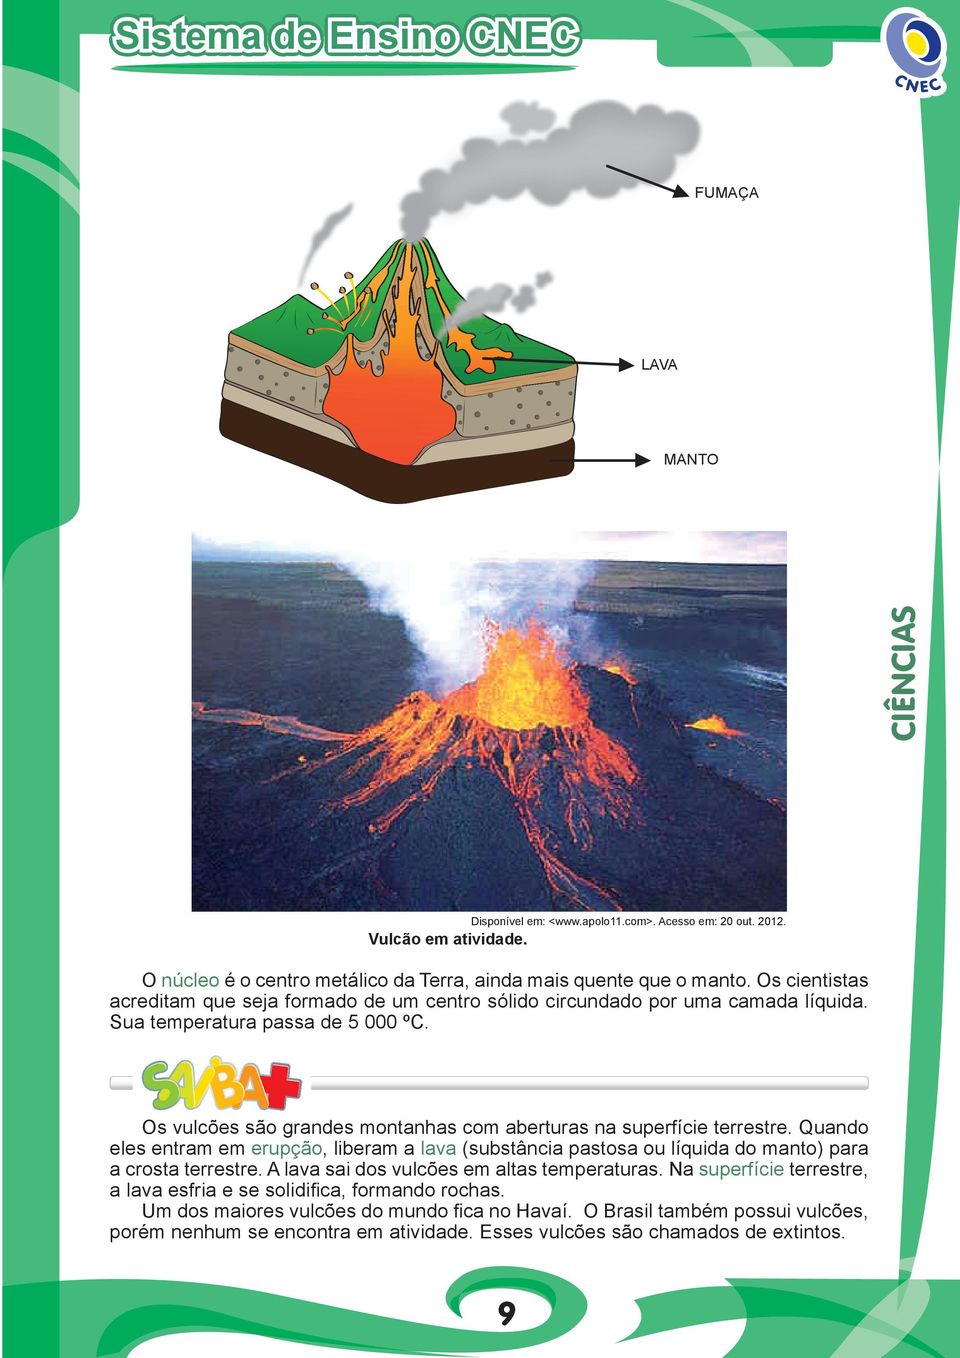 Os vulcões são grandes montanhas com aberturas na superfície terrestre. Quando eles entram em erupção, liberam a lava (substância pastosa ou líquida do manto) para a crosta terrestre.